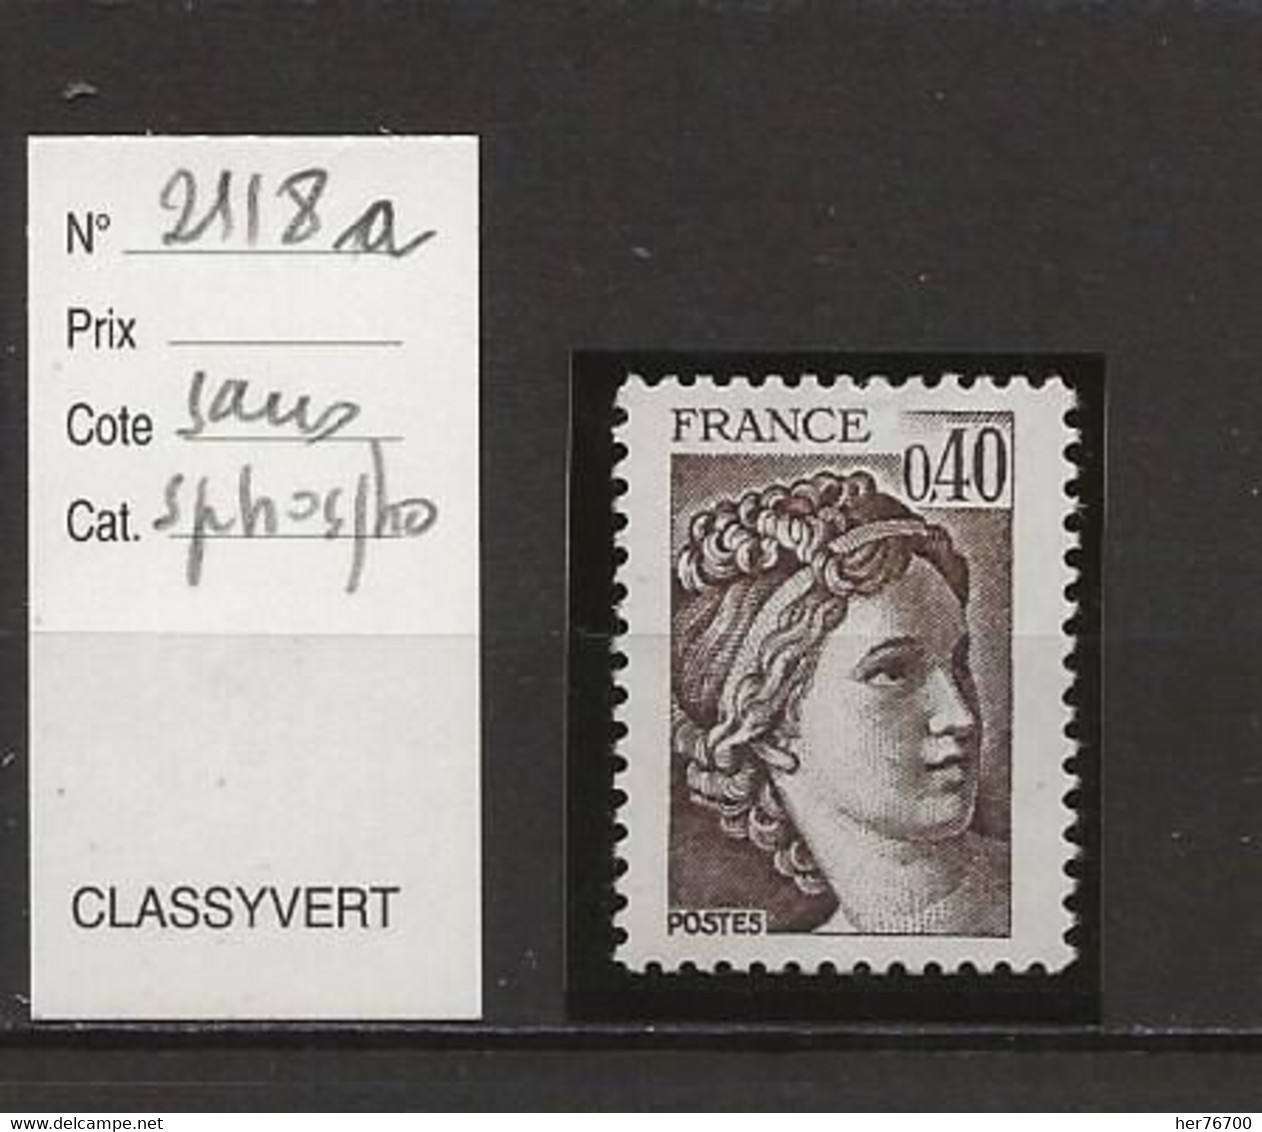 VARIETE FRANCAISE N° YVERT 2118a - Unused Stamps